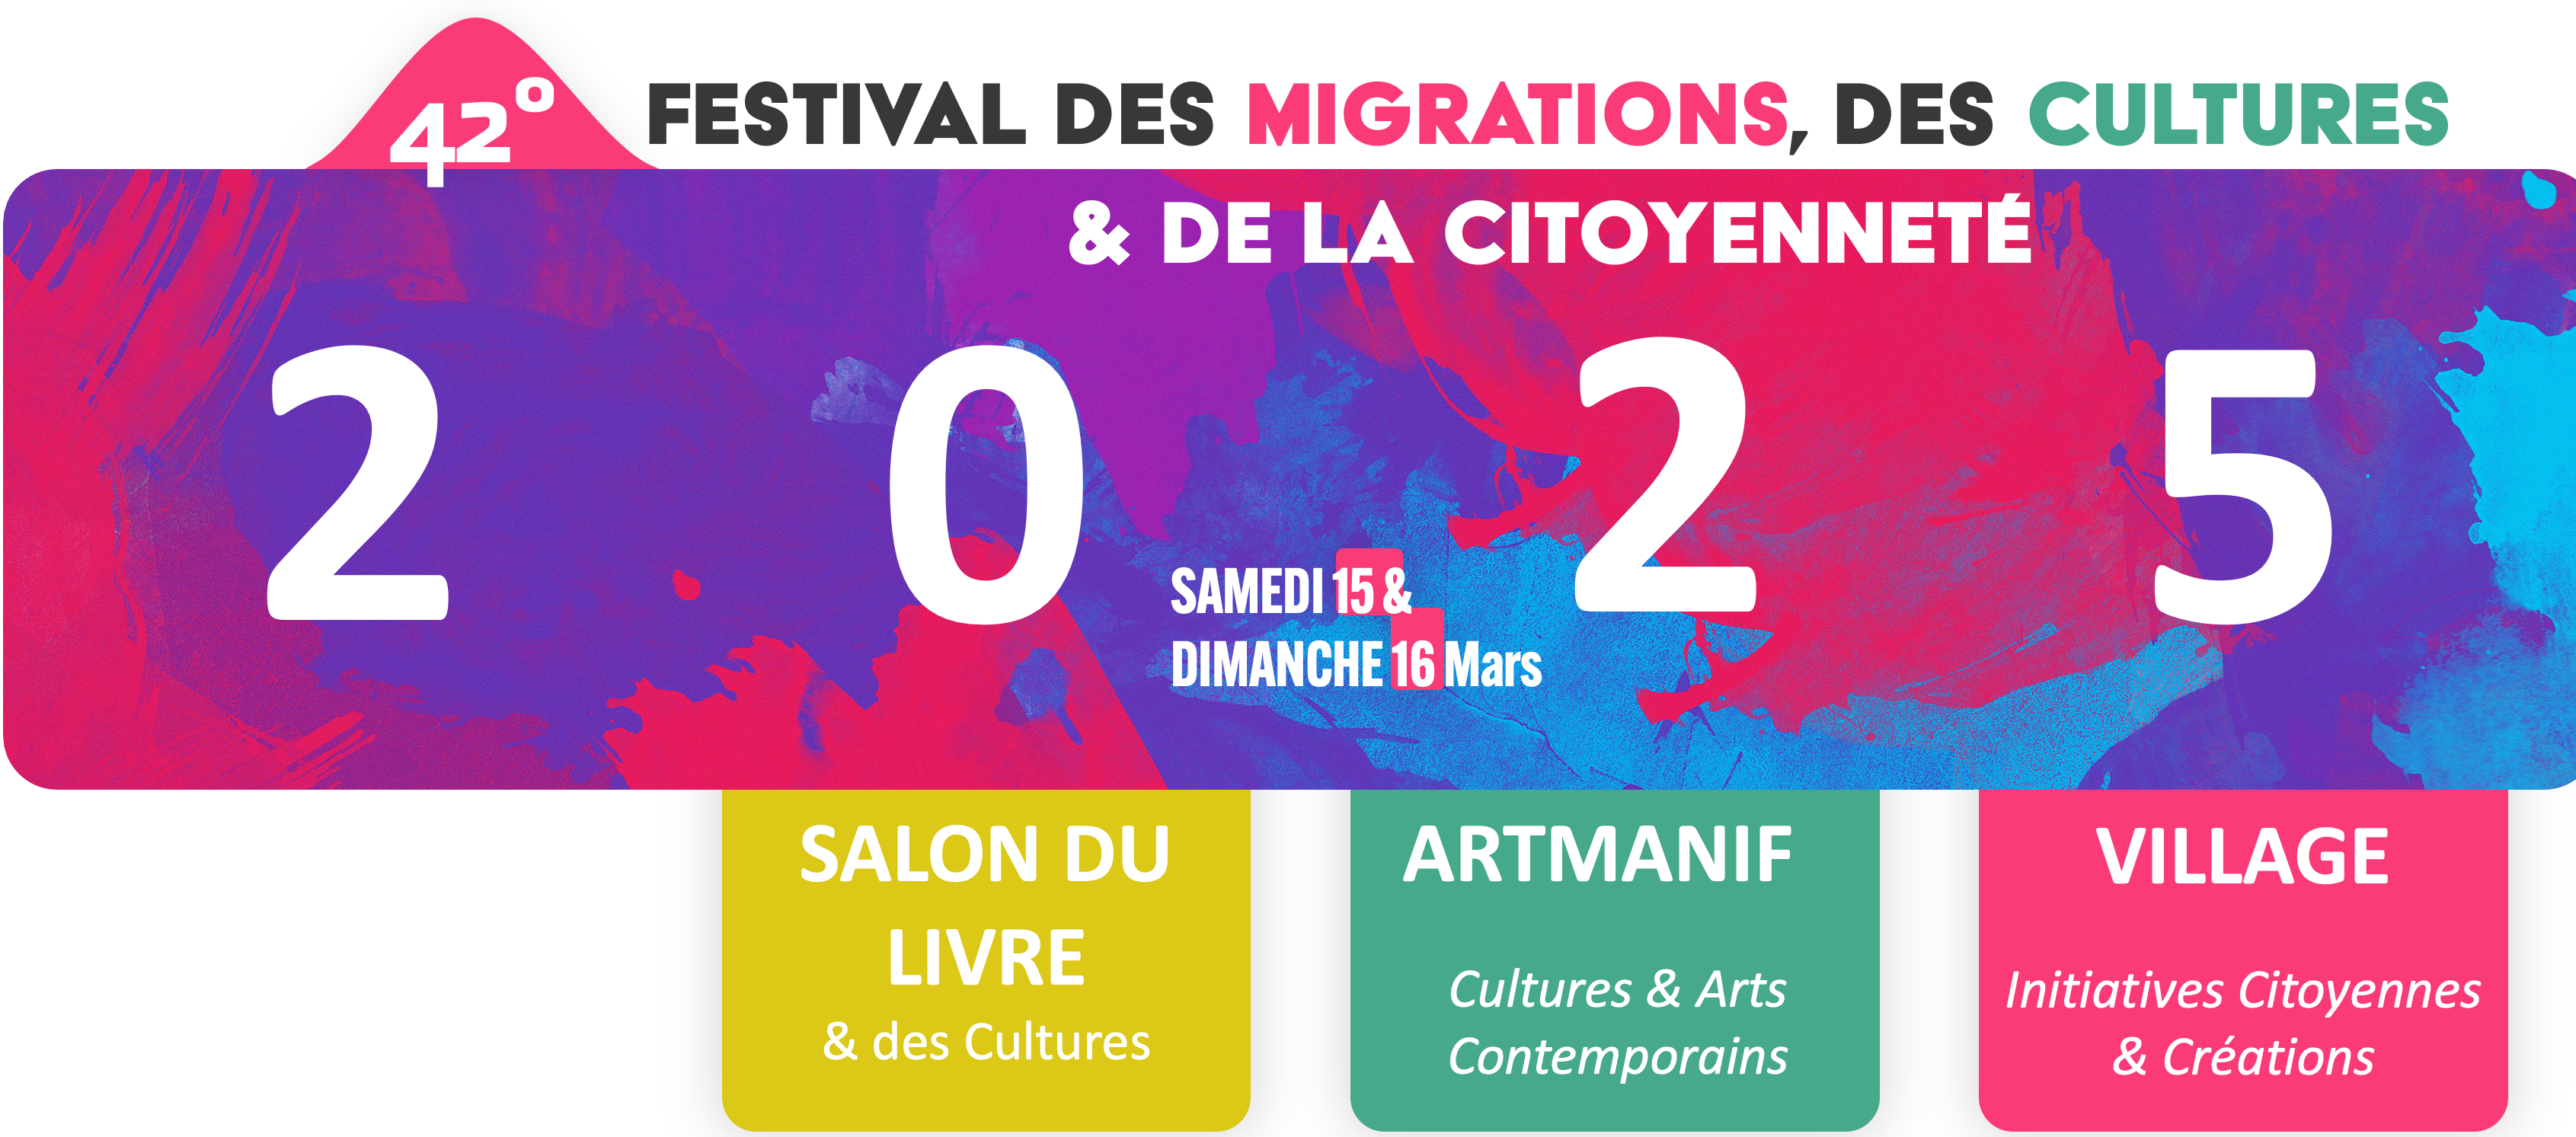 Festival des Migrations, des Cultures & de la Citoyenneté 2024Festival des Migrations, des Cultures & de la Citoyenneté 2024